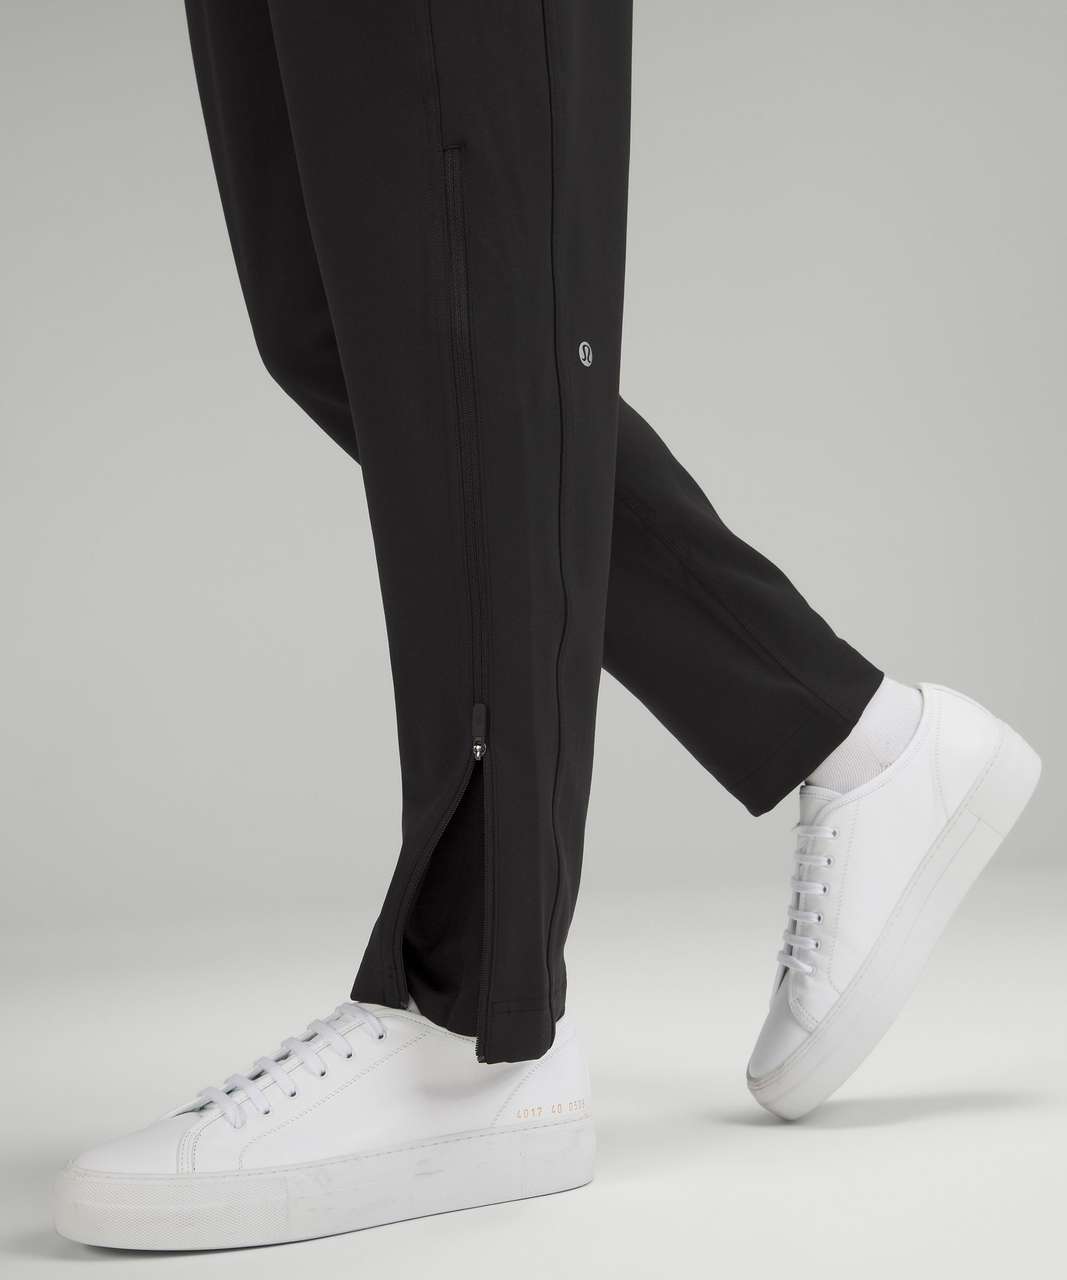 Lululemon Fresh Tracks Pant Black Size 4 Zippered Legs Reflective w/ Pockets  on eBid Canada